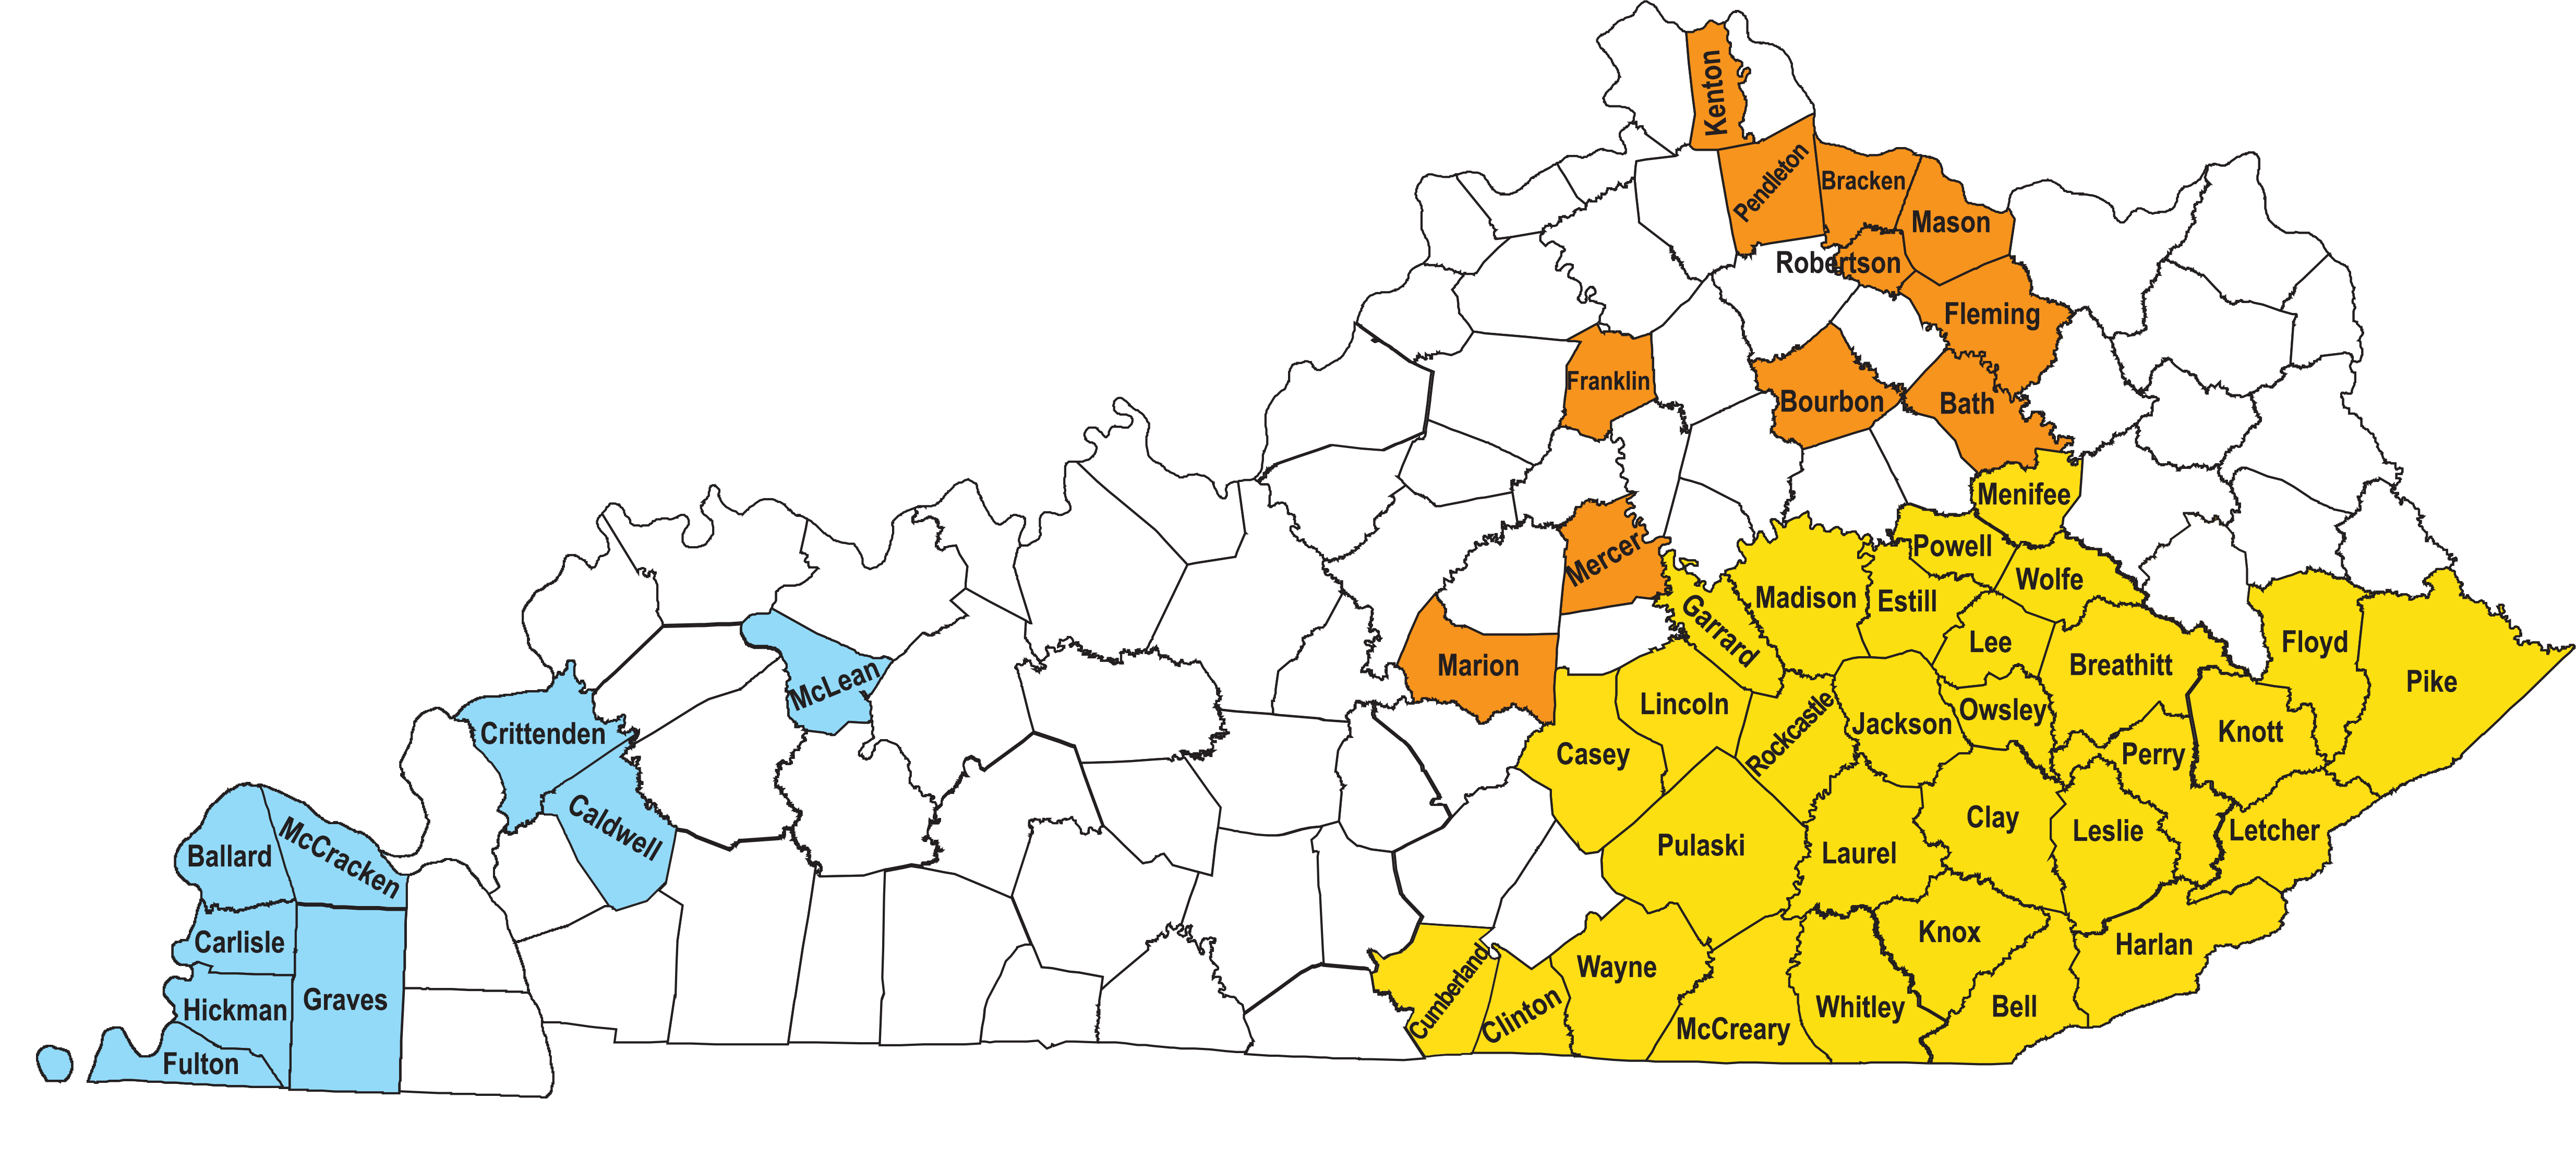 Map of GEAR UP regions in Kentucky